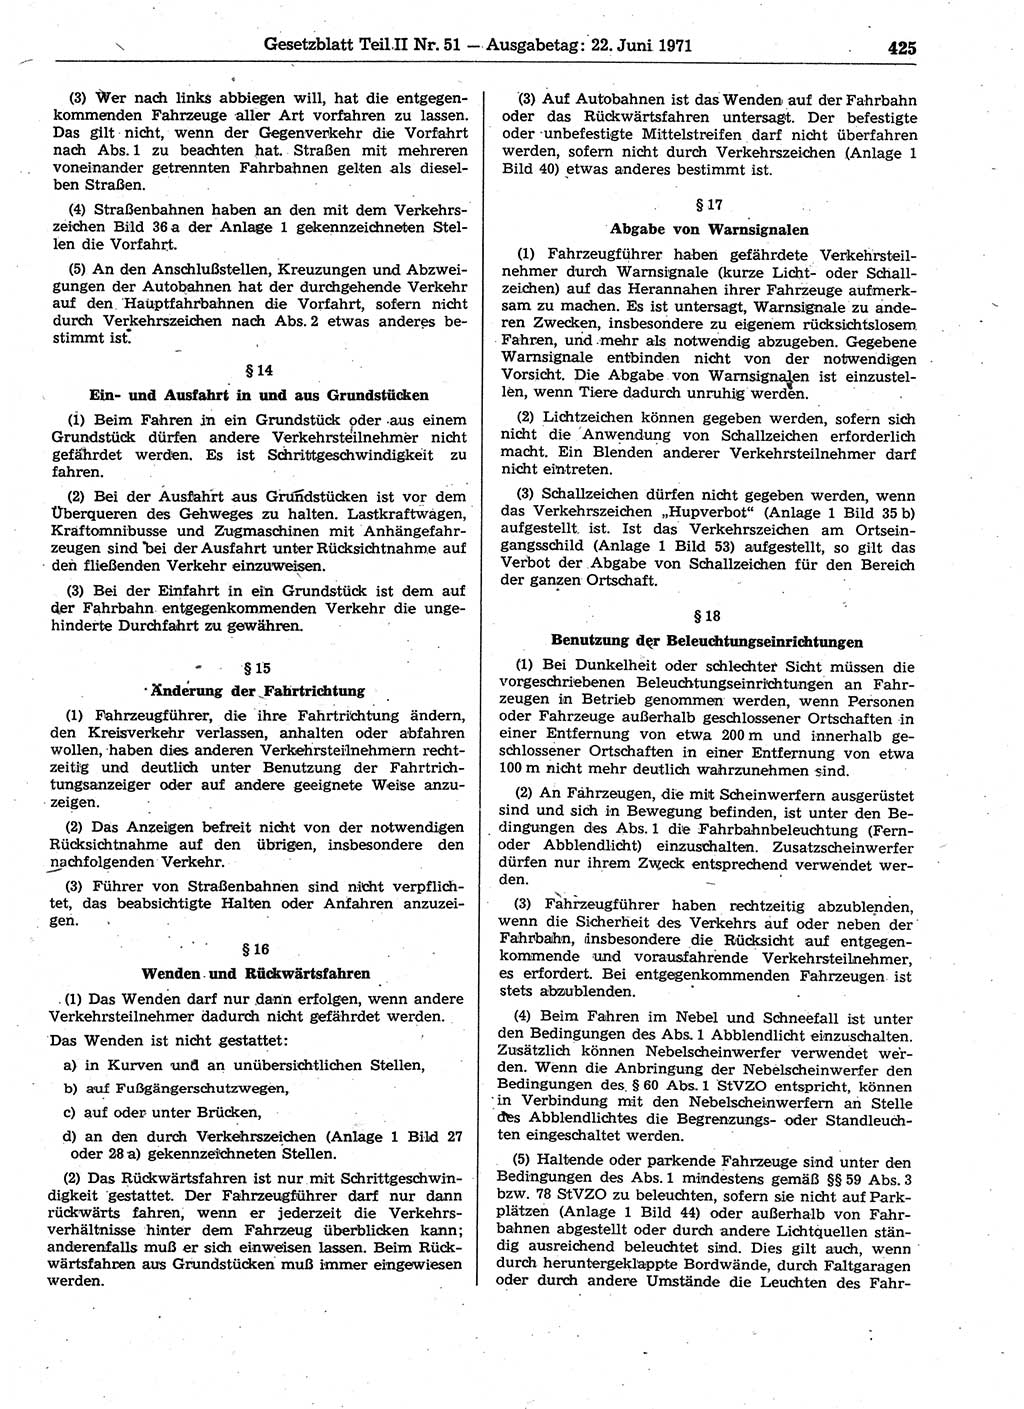 Gesetzblatt (GBl.) der Deutschen Demokratischen Republik (DDR) Teil ⅠⅠ 1971, Seite 425 (GBl. DDR ⅠⅠ 1971, S. 425)